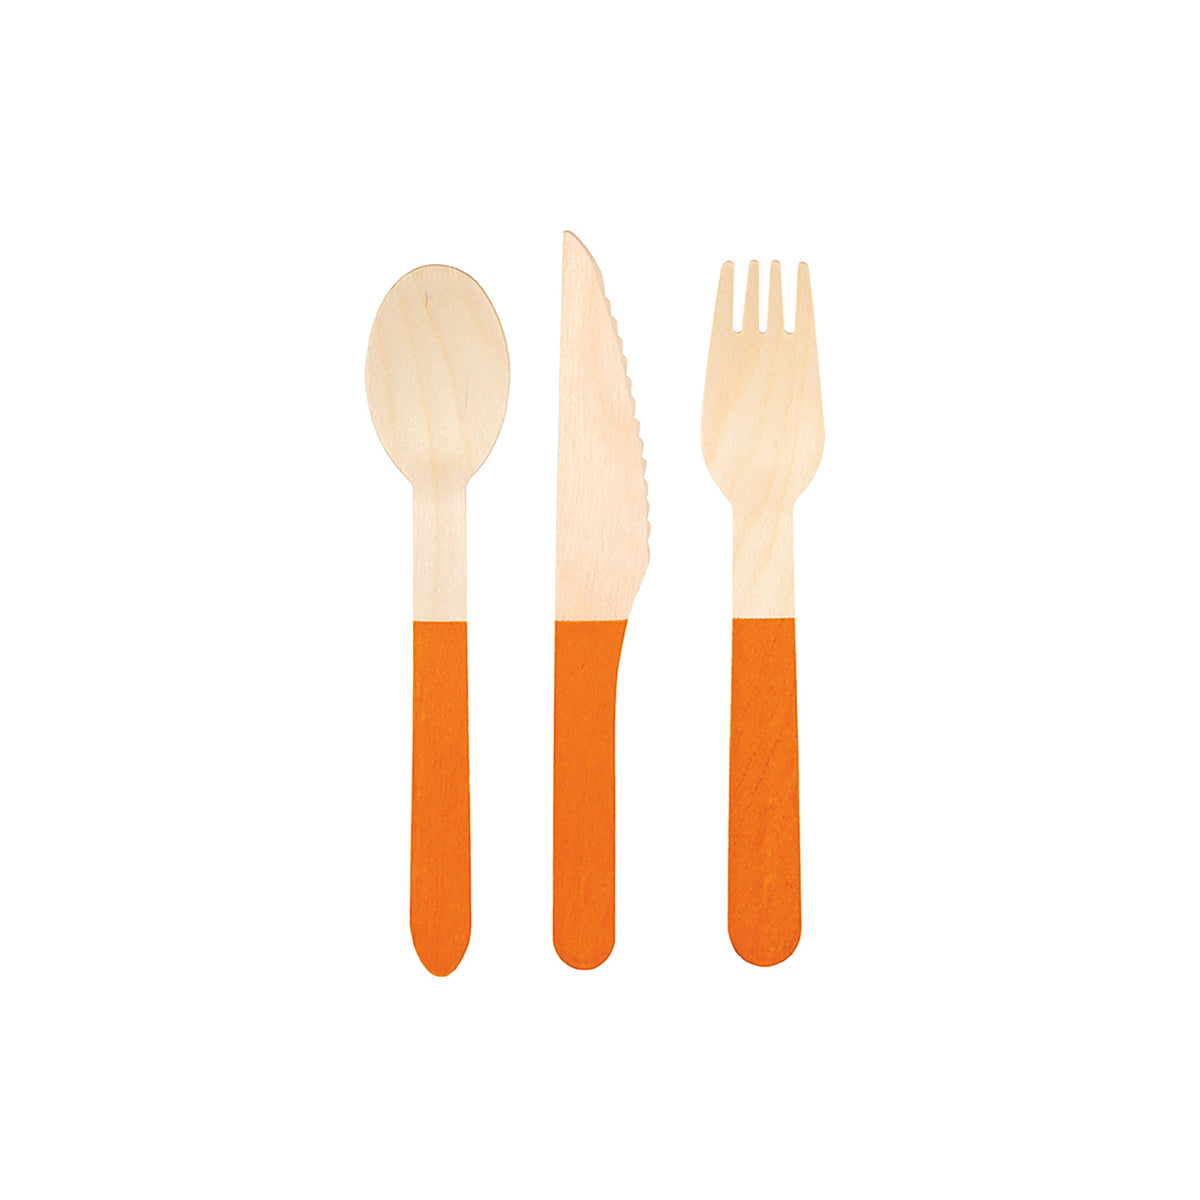 UNIQUE PARTY FAVORS Disposable-Plasticware Wooden Cutlery Set, Summer Citrus, 12 Count 011179164790